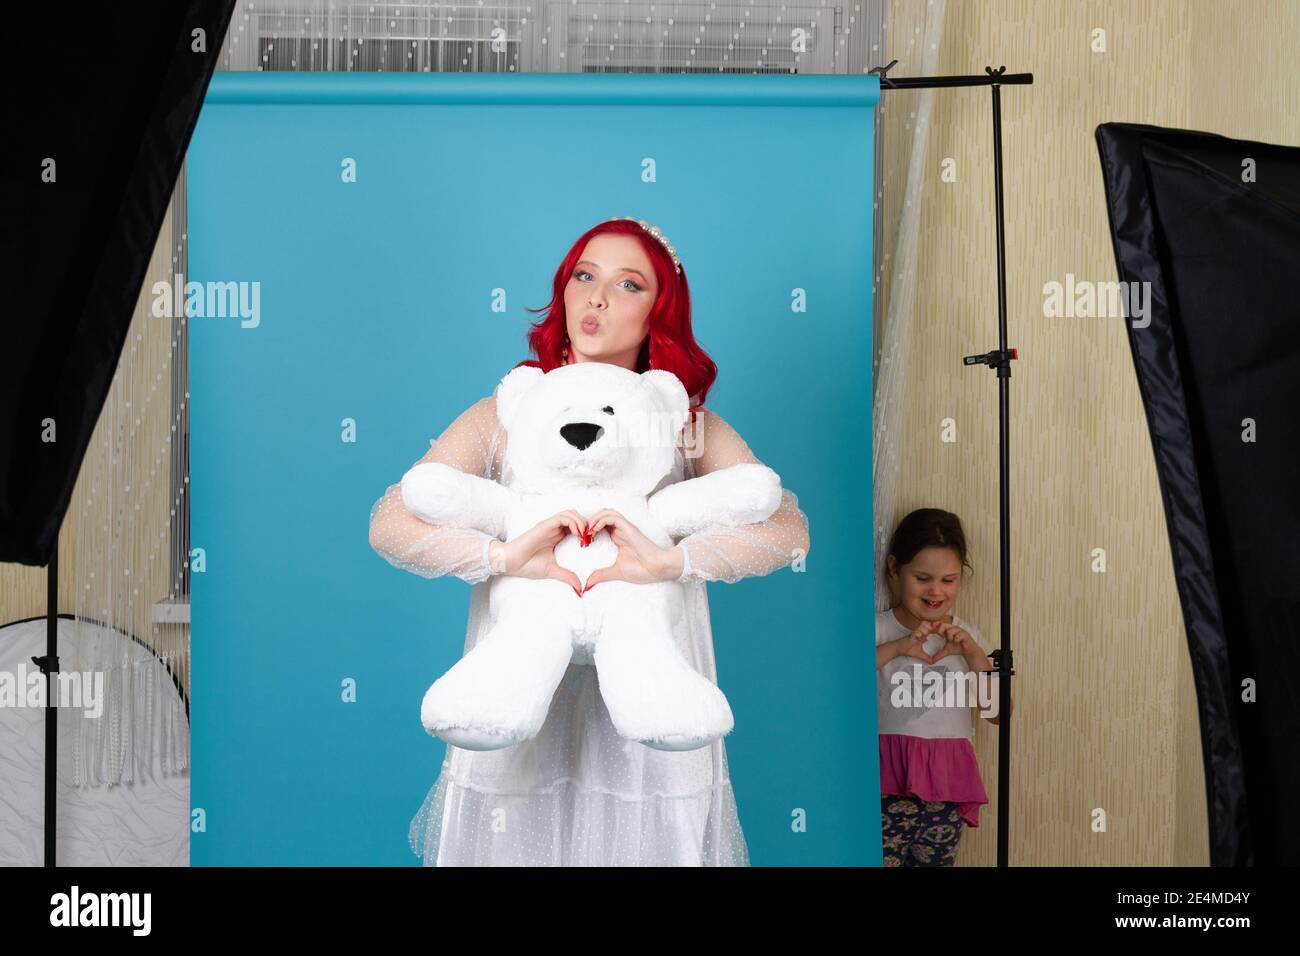 Maison studio de photo, un modèle dans une robe blanche et un ours en peluche pose pour la Saint-Valentin, une fille lance et répète pose Banque D'Images